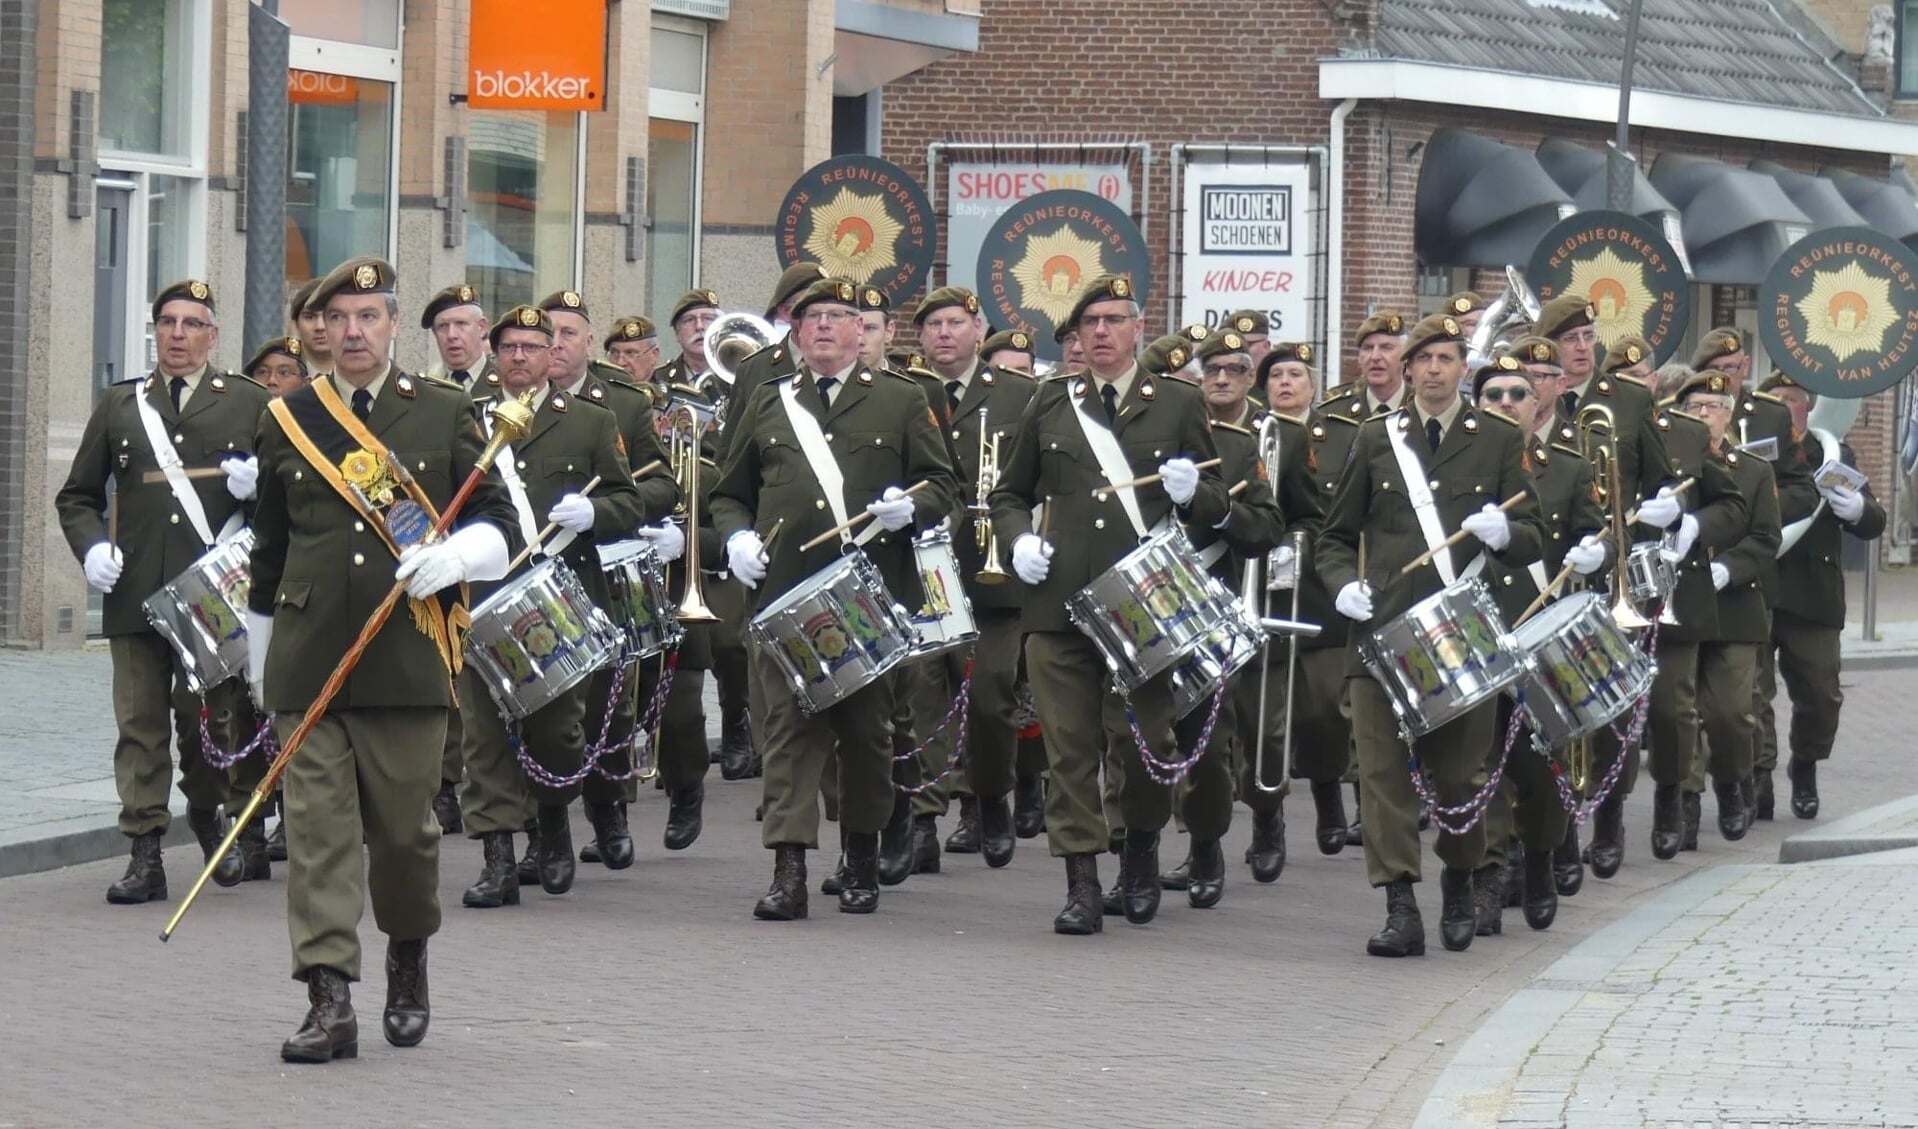 Het orkest is door de Regimentscommandant van het Regiment van Heutsz - o.a. het 12e Infanterie bataljon Luchtmobiel - erkend als reünieorkest en manifesteert zich dan ook in uniformen uit de dienstplichtperiode.